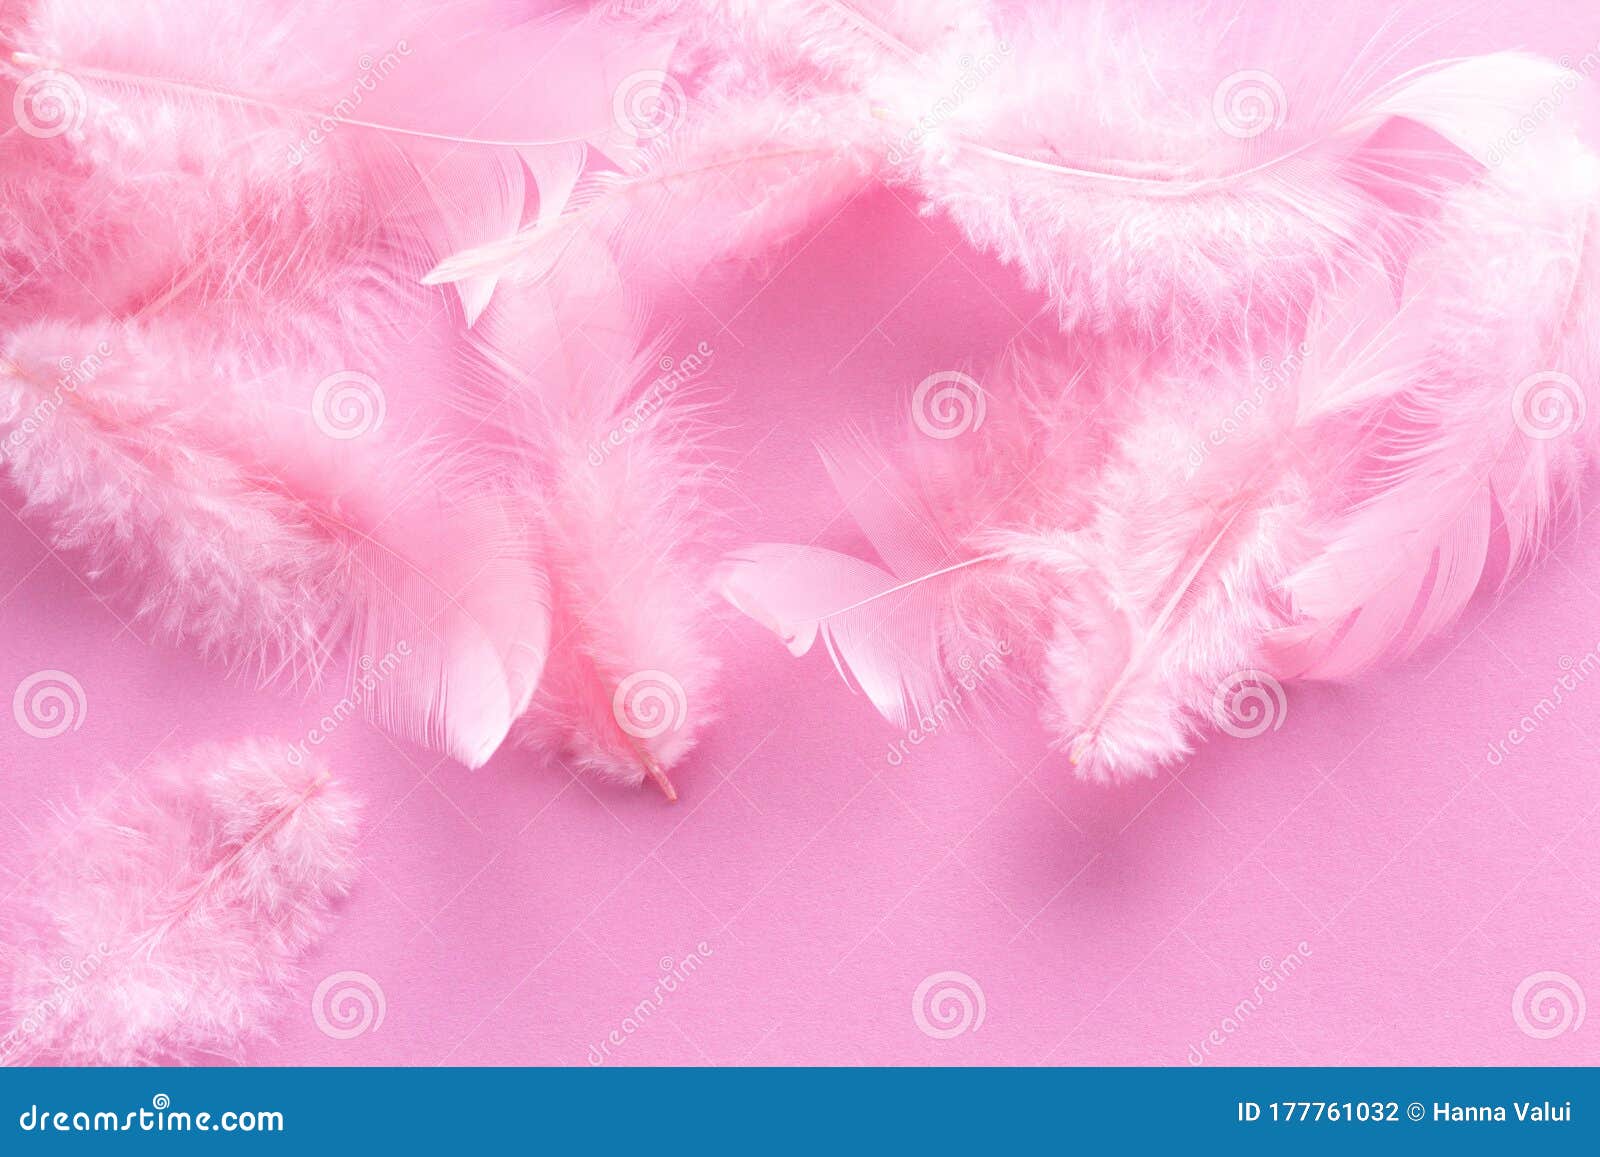 https://thumbs.dreamstime.com/z/plumas-de-color-rosa-coral-suave-y-esponjoso-sobre-fondo-pastel-estilo-minimalista-tendencia-vintage-textura-pluma-blando-dise%C3%B1o-177761032.jpg